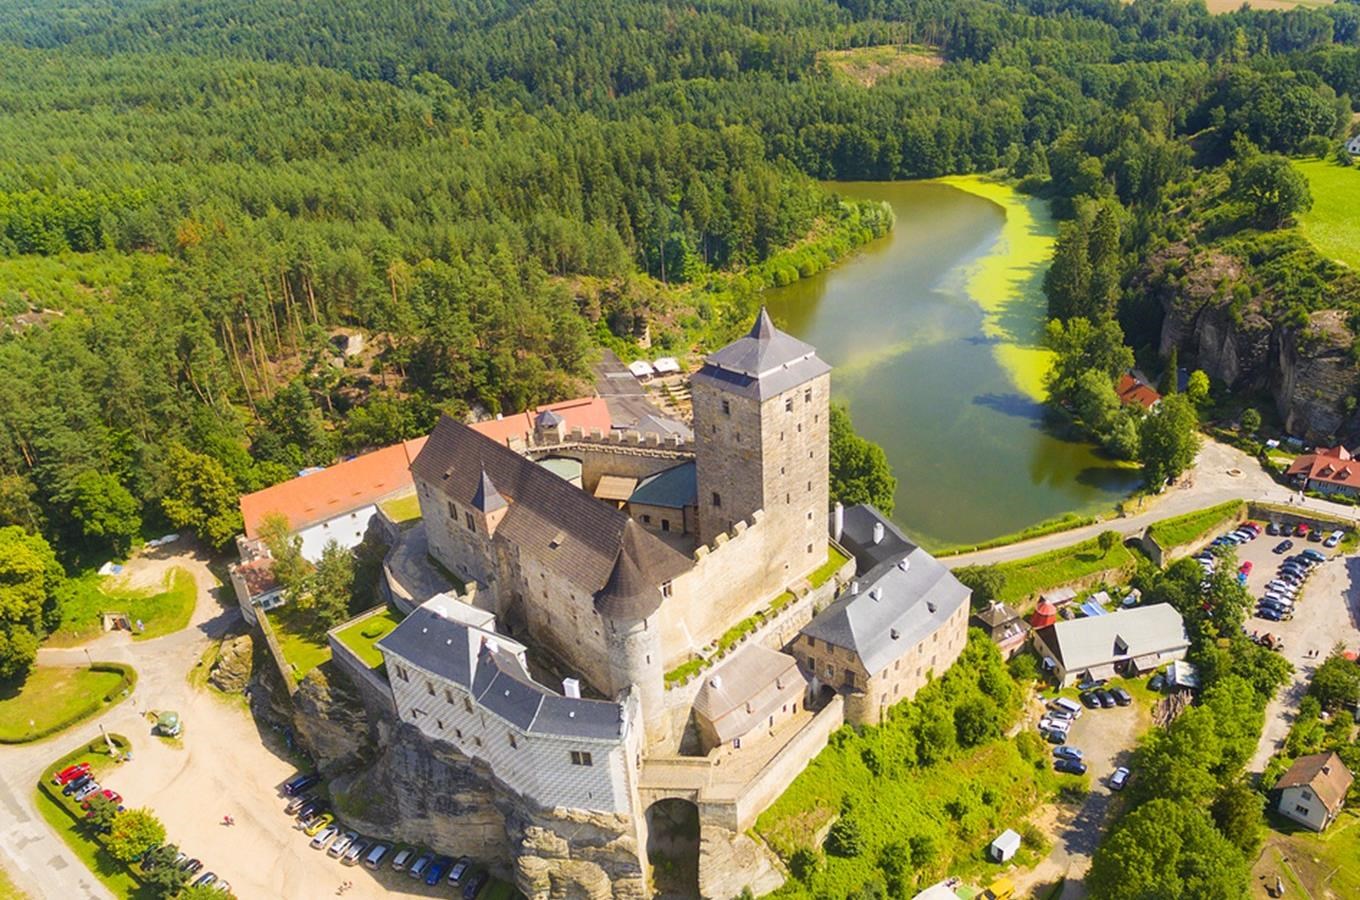 Ubytování na hradě Kost - nejzachovalejším gotickém hradu v Česku